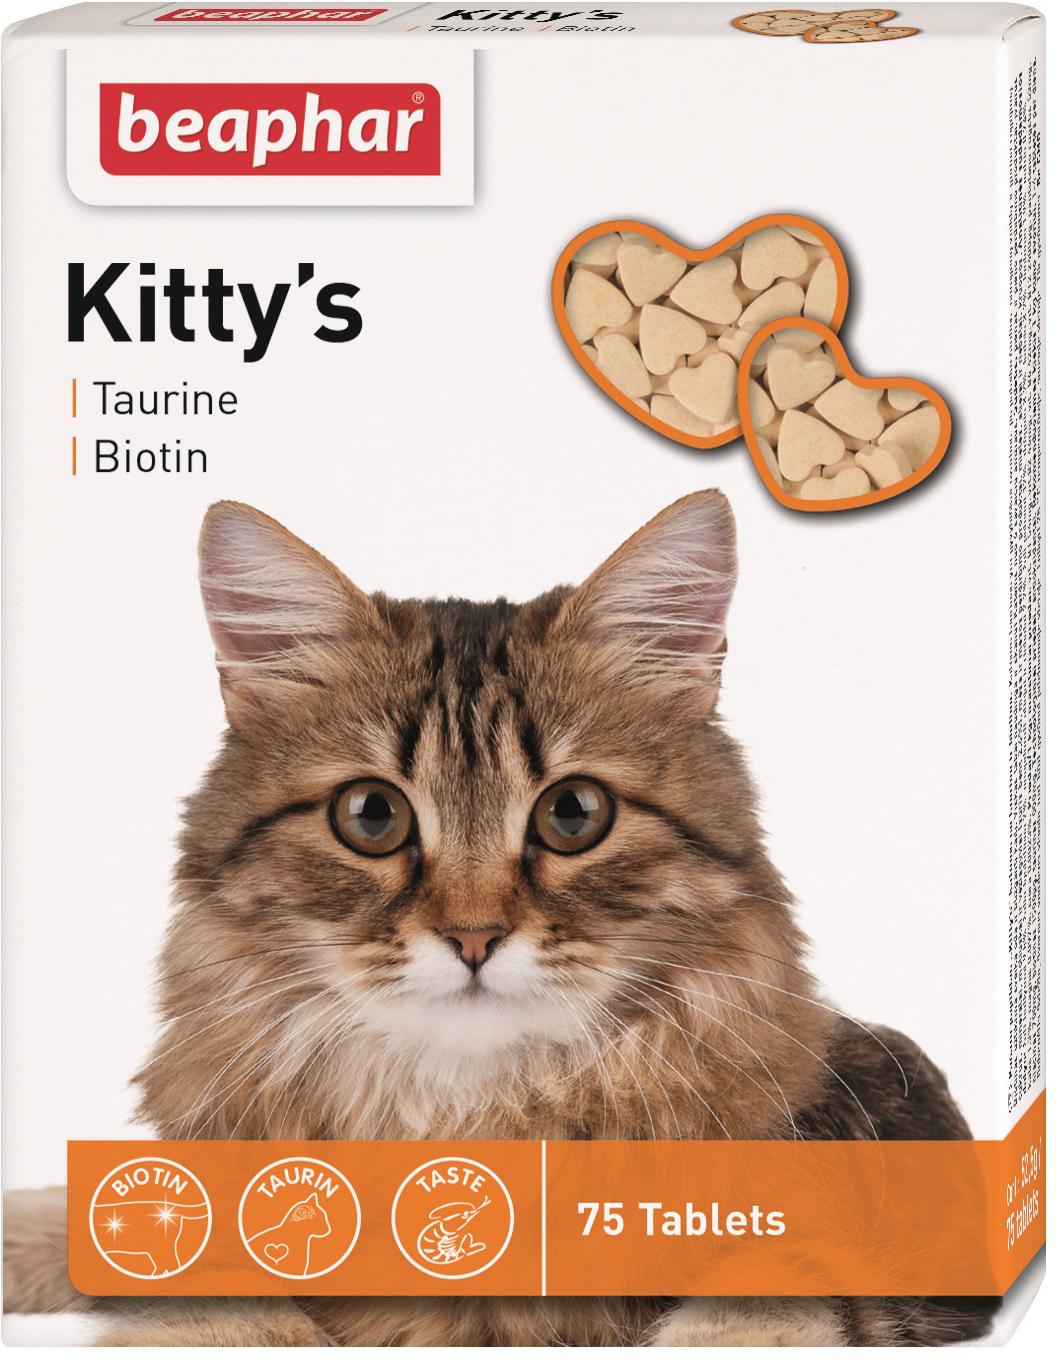 Beaphar Kitty’s 75таб витамины с таурином,биотином для кошек фото, цены, купить